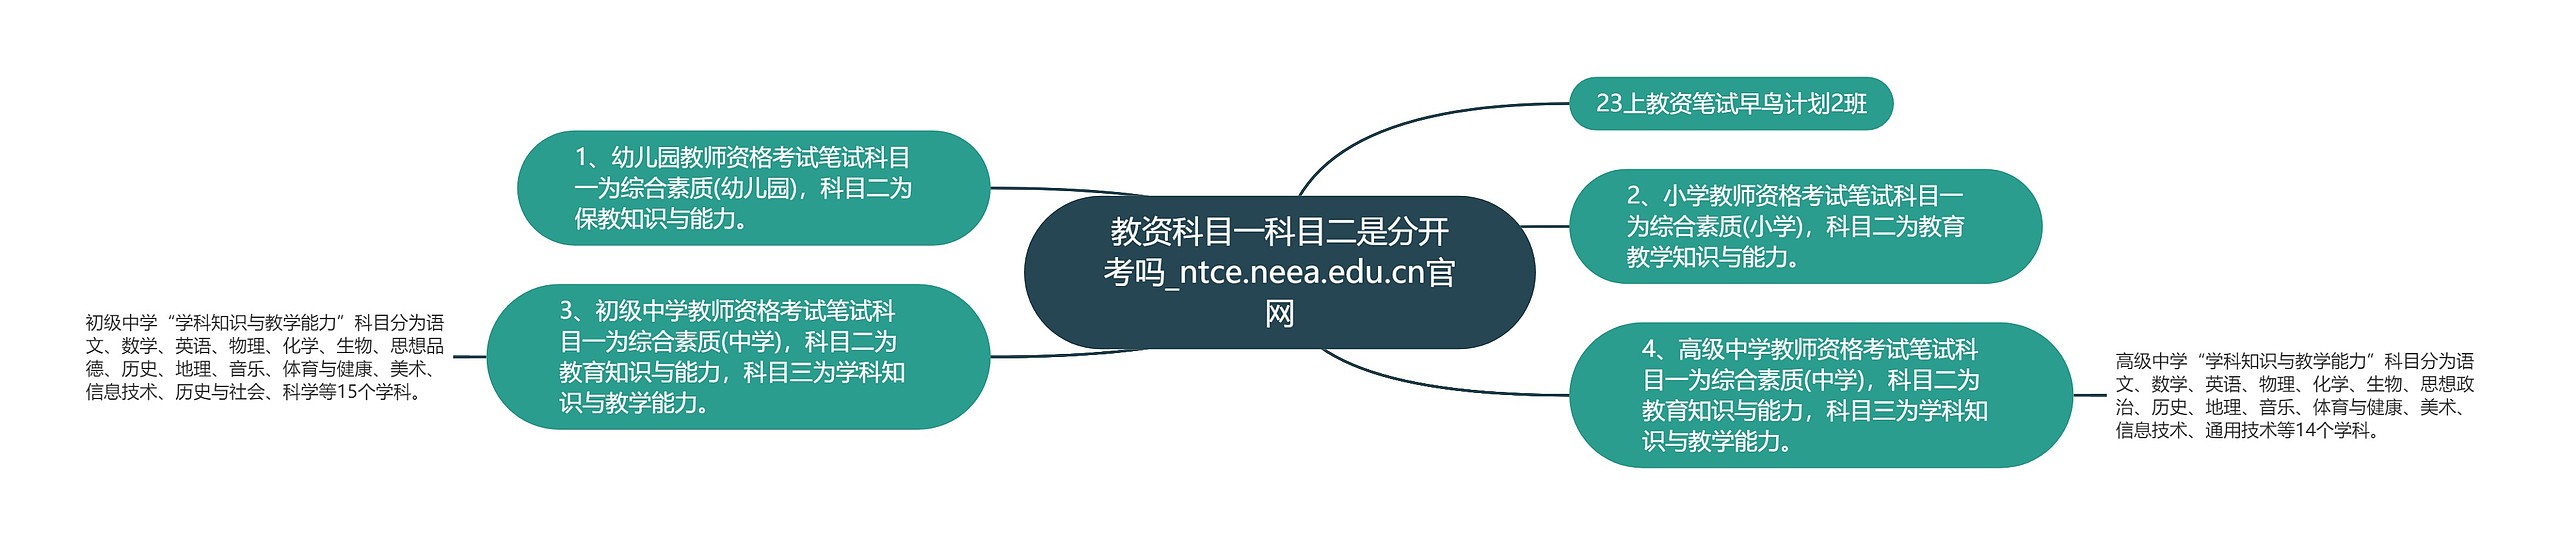 教资科目一科目二是分开考吗_ntce.neea.edu.cn官网